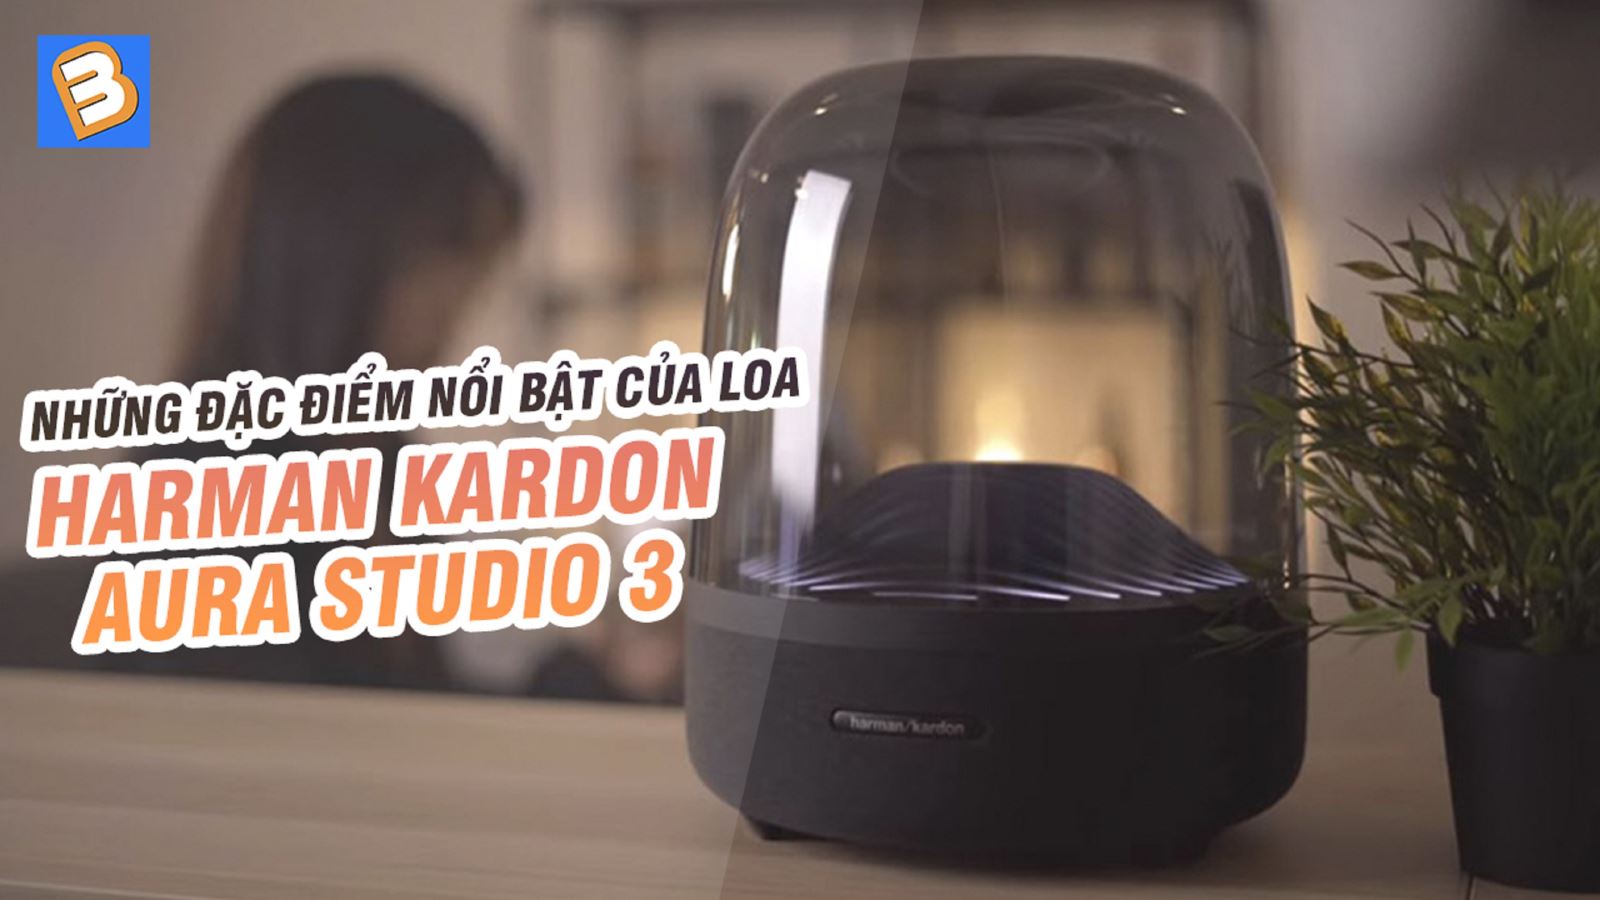 Những đặc điểm nổi bật của loa Harman Kardon Aura Studio 3